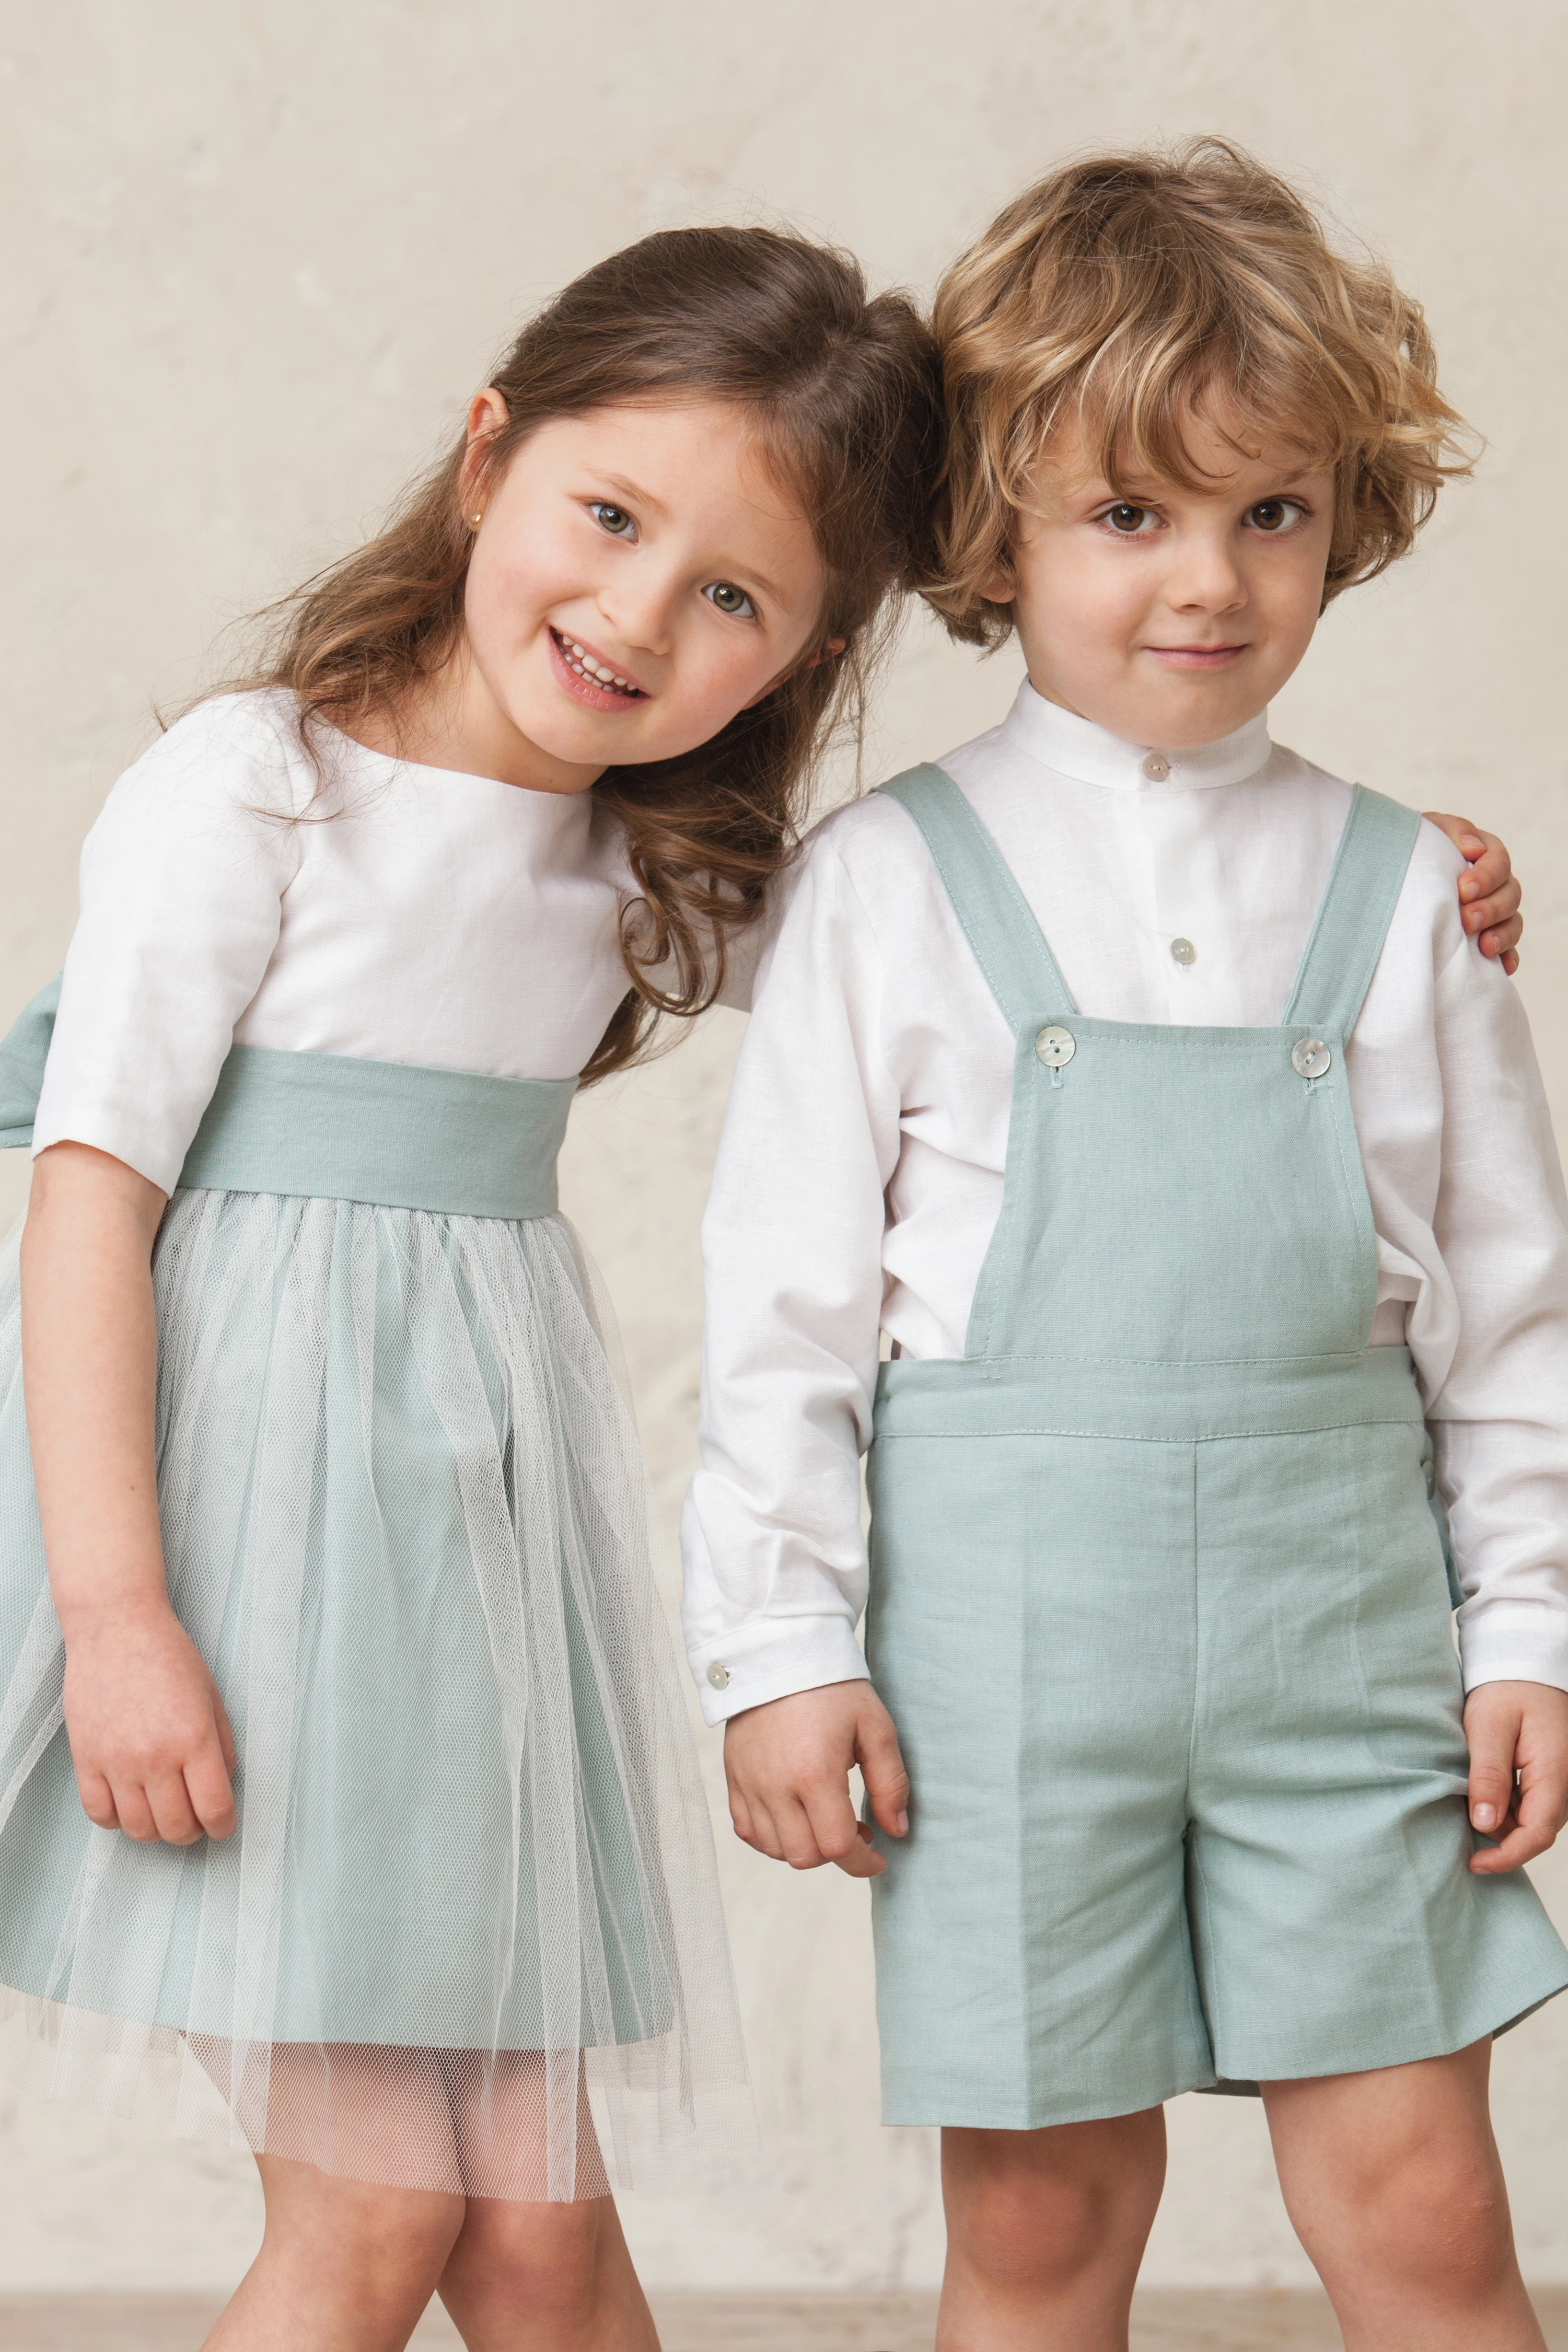 satisfacción Ponte de pie en su lugar audible La mejor ropa de ceremonia para niños | Todoboda.com